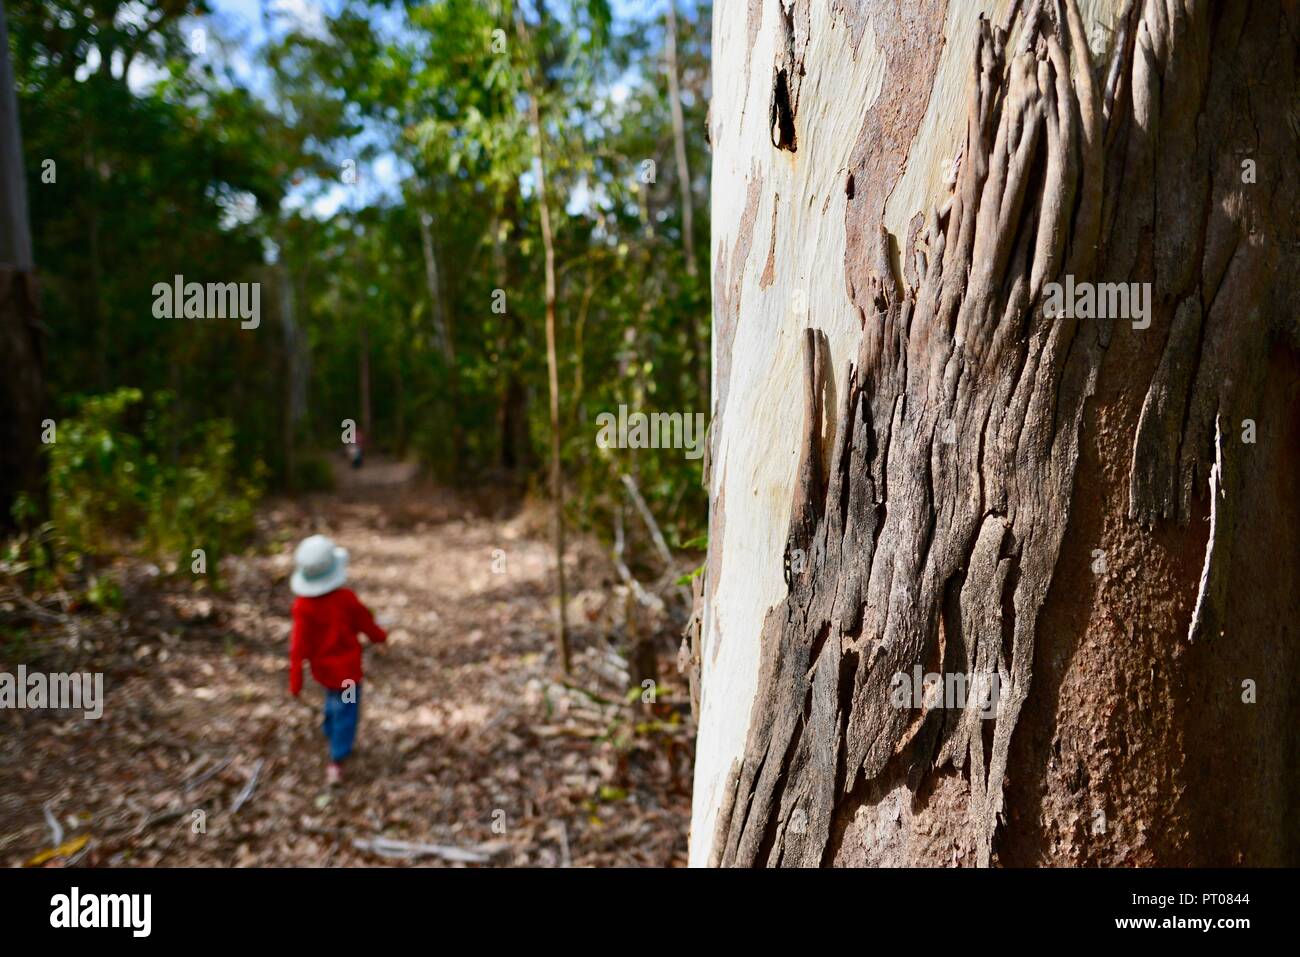 Un jeune enfant porter du rouge marche à travers une forêt, Dalrymple gap, Queensland, Australie Banque D'Images